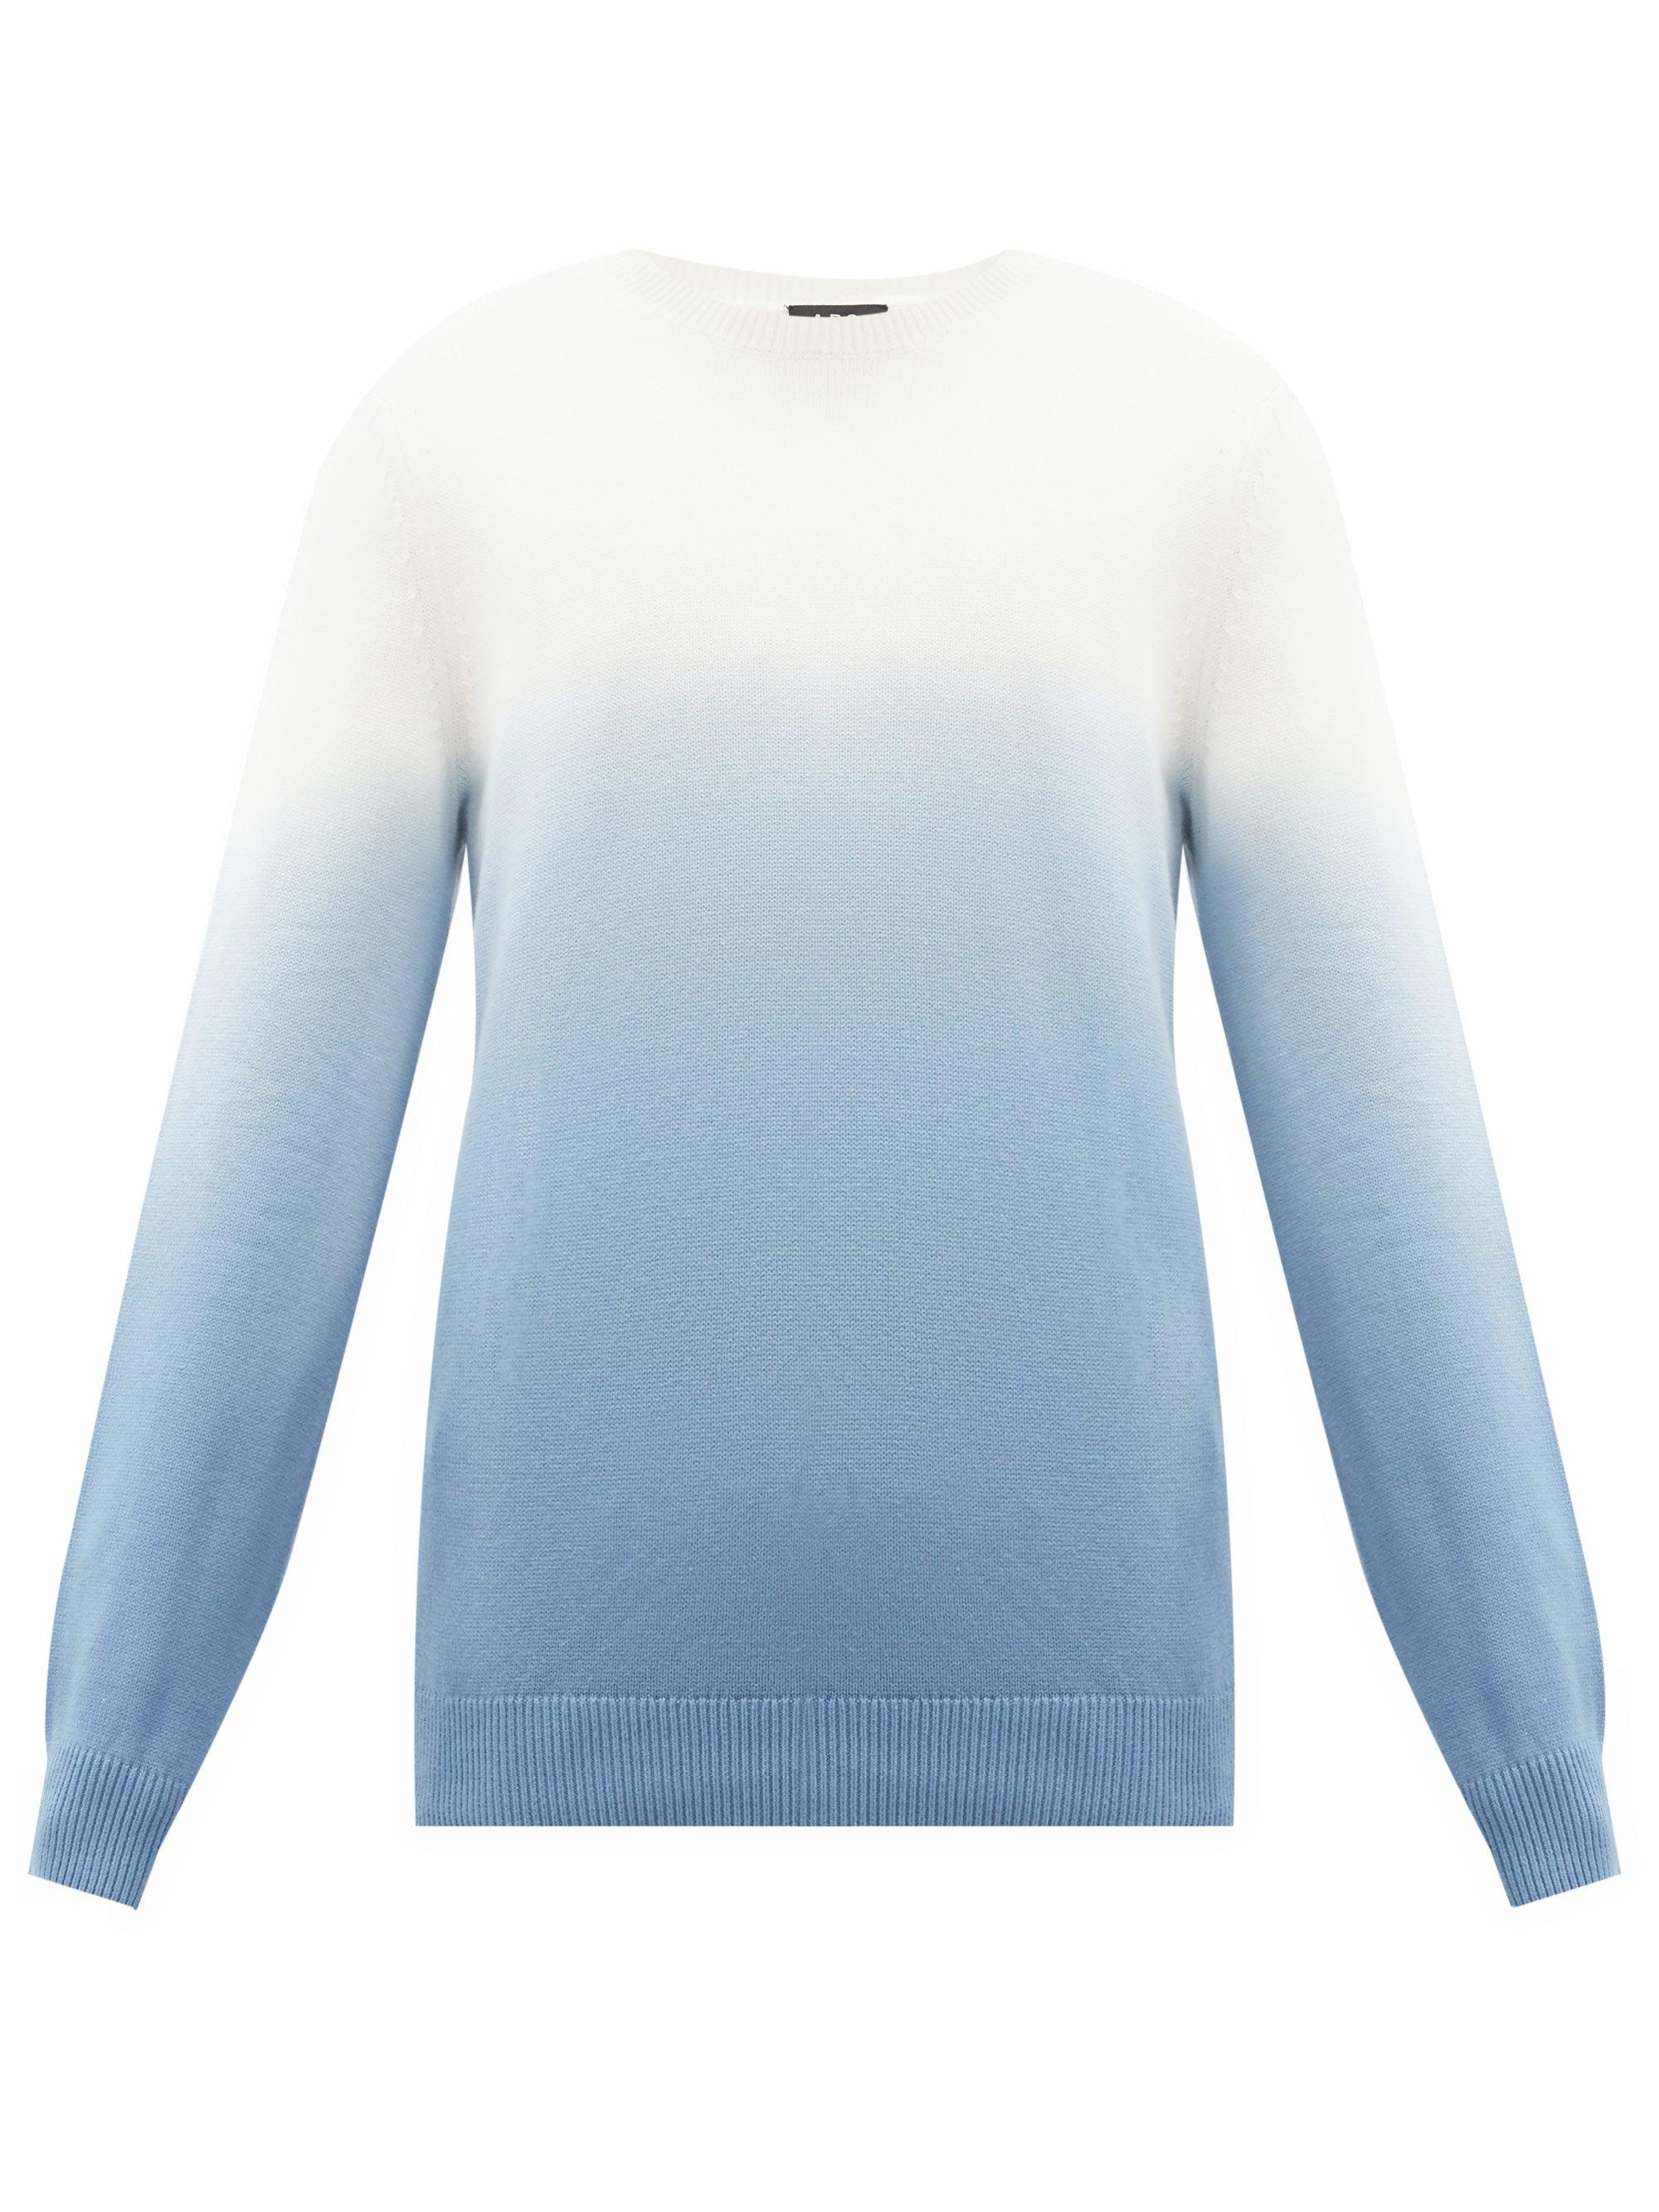 A.P.C. Skyline Ombré Tie-dye Cotton Sweater in Blue for Men - Lyst